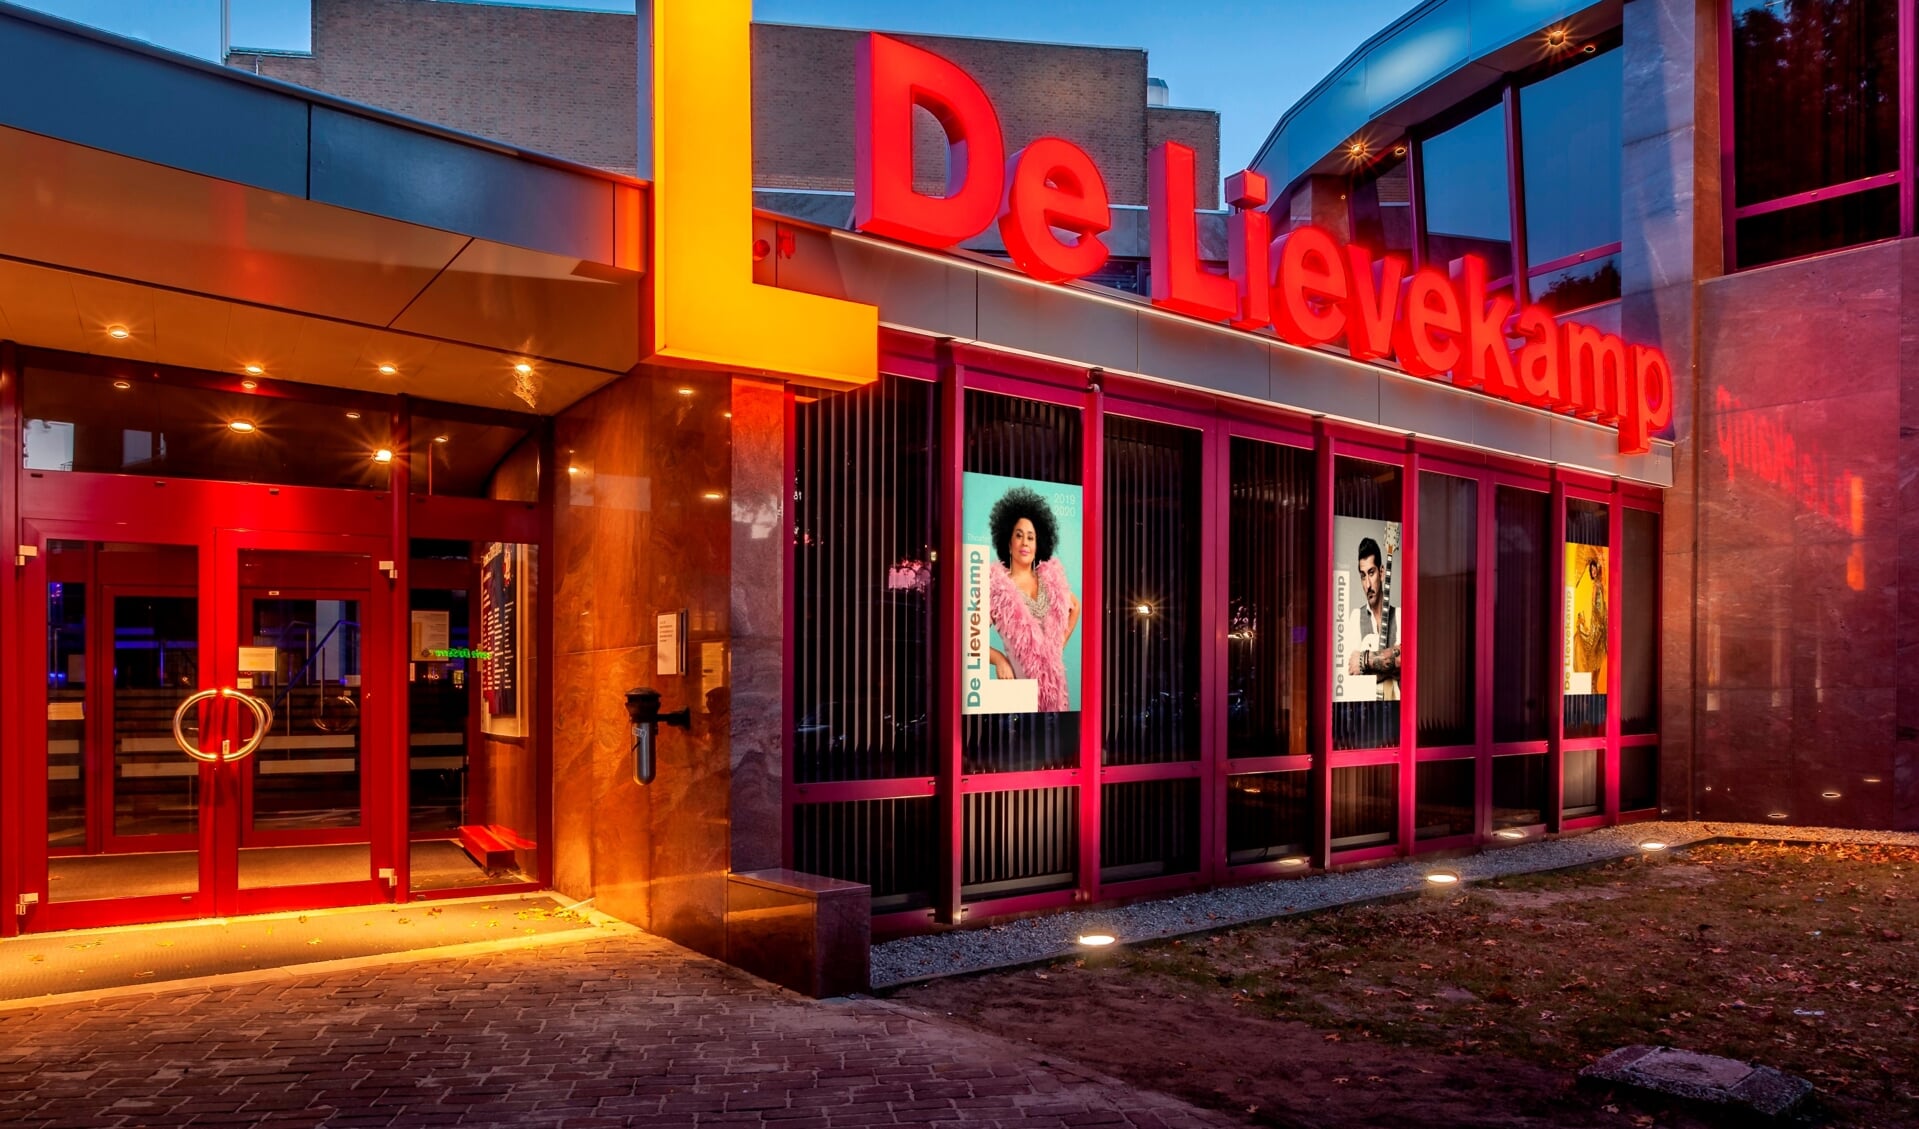 Theater De Lievekamp.